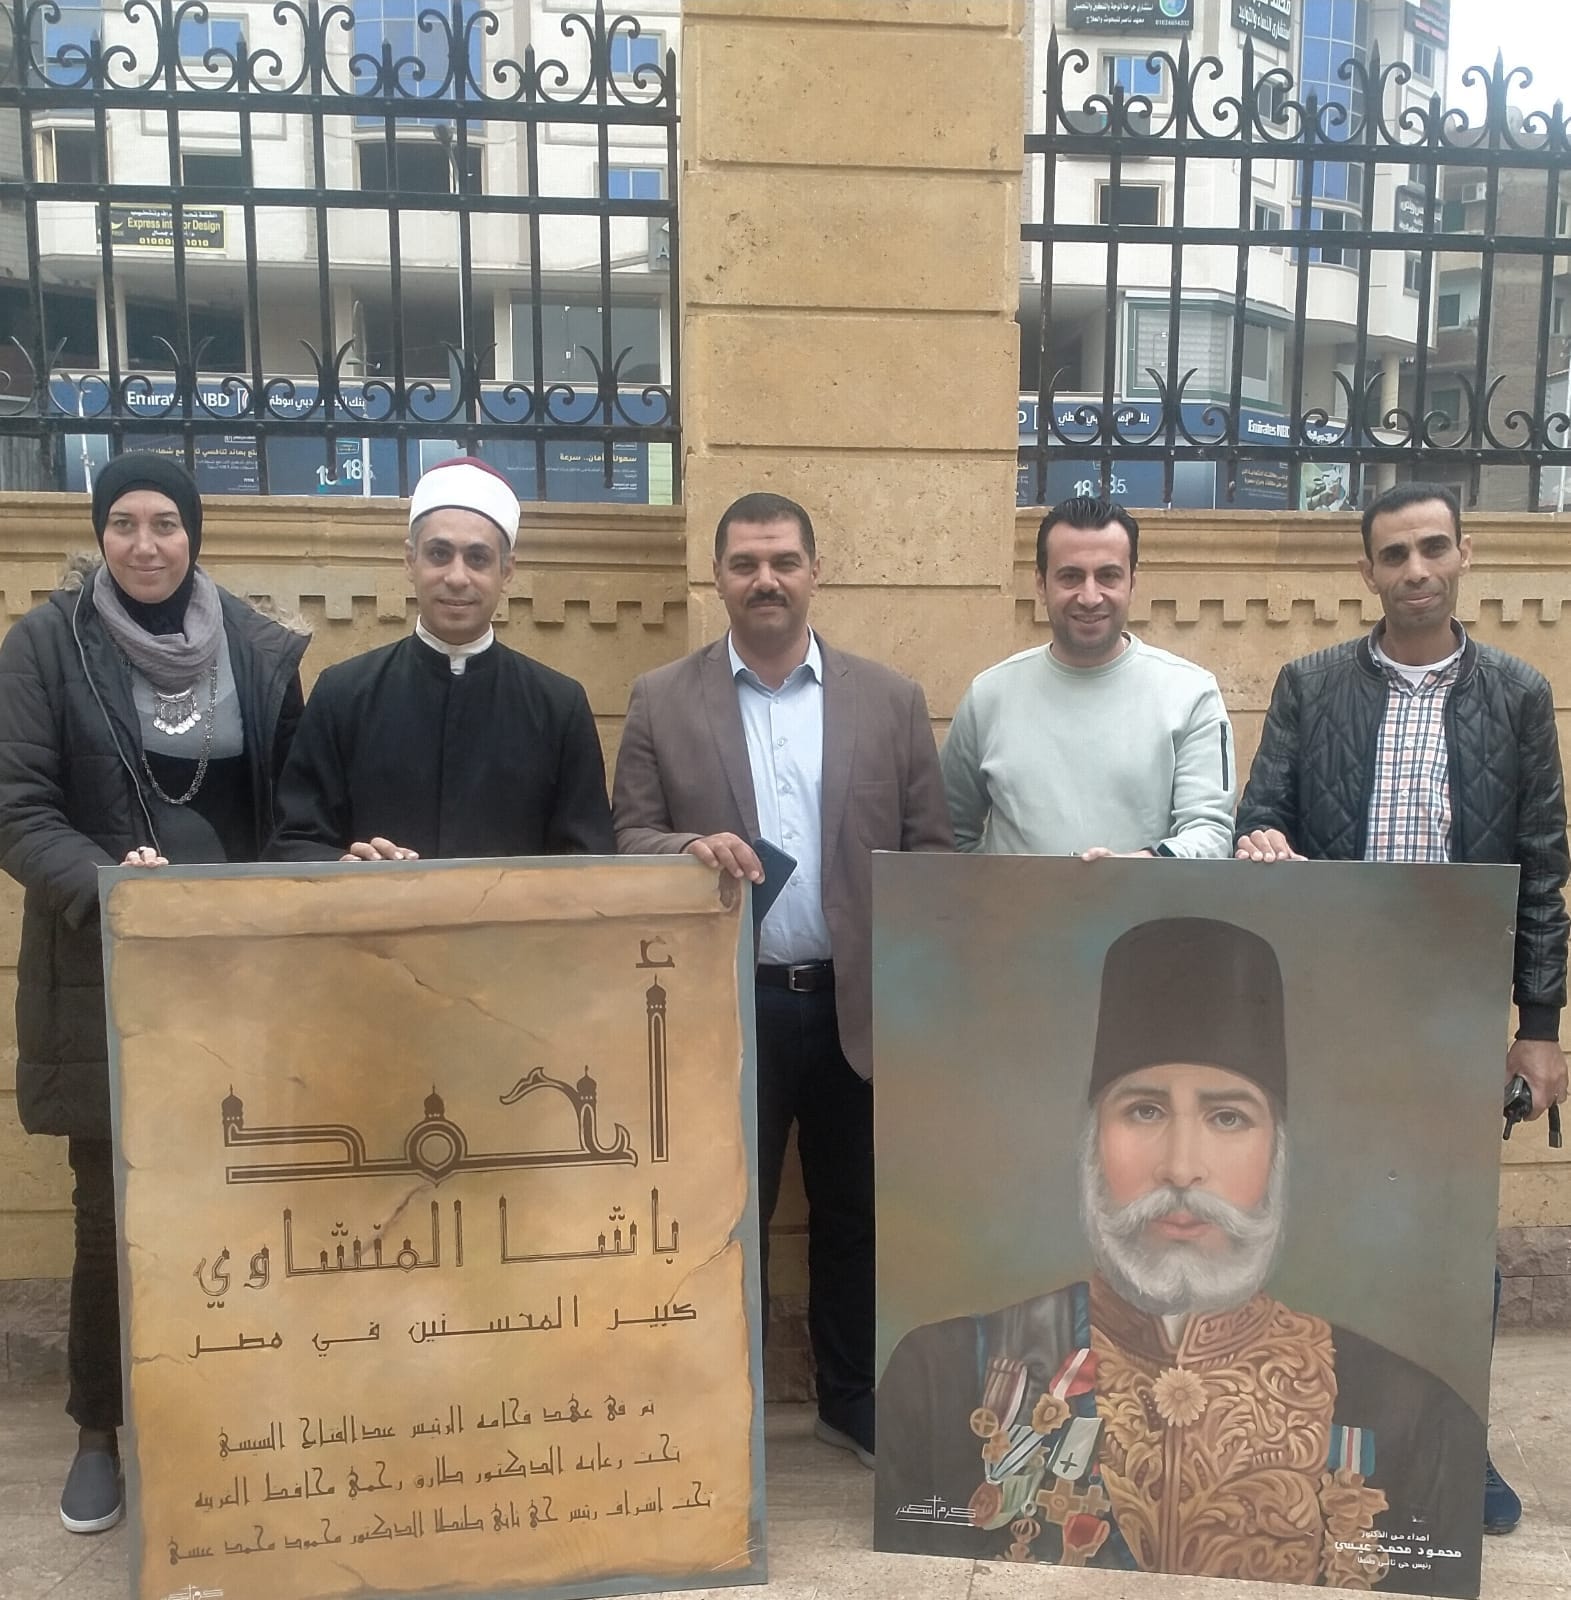 فنان مسيحي يهدي مسجد المنشاوي باشا صورة للمنشاوي باشا